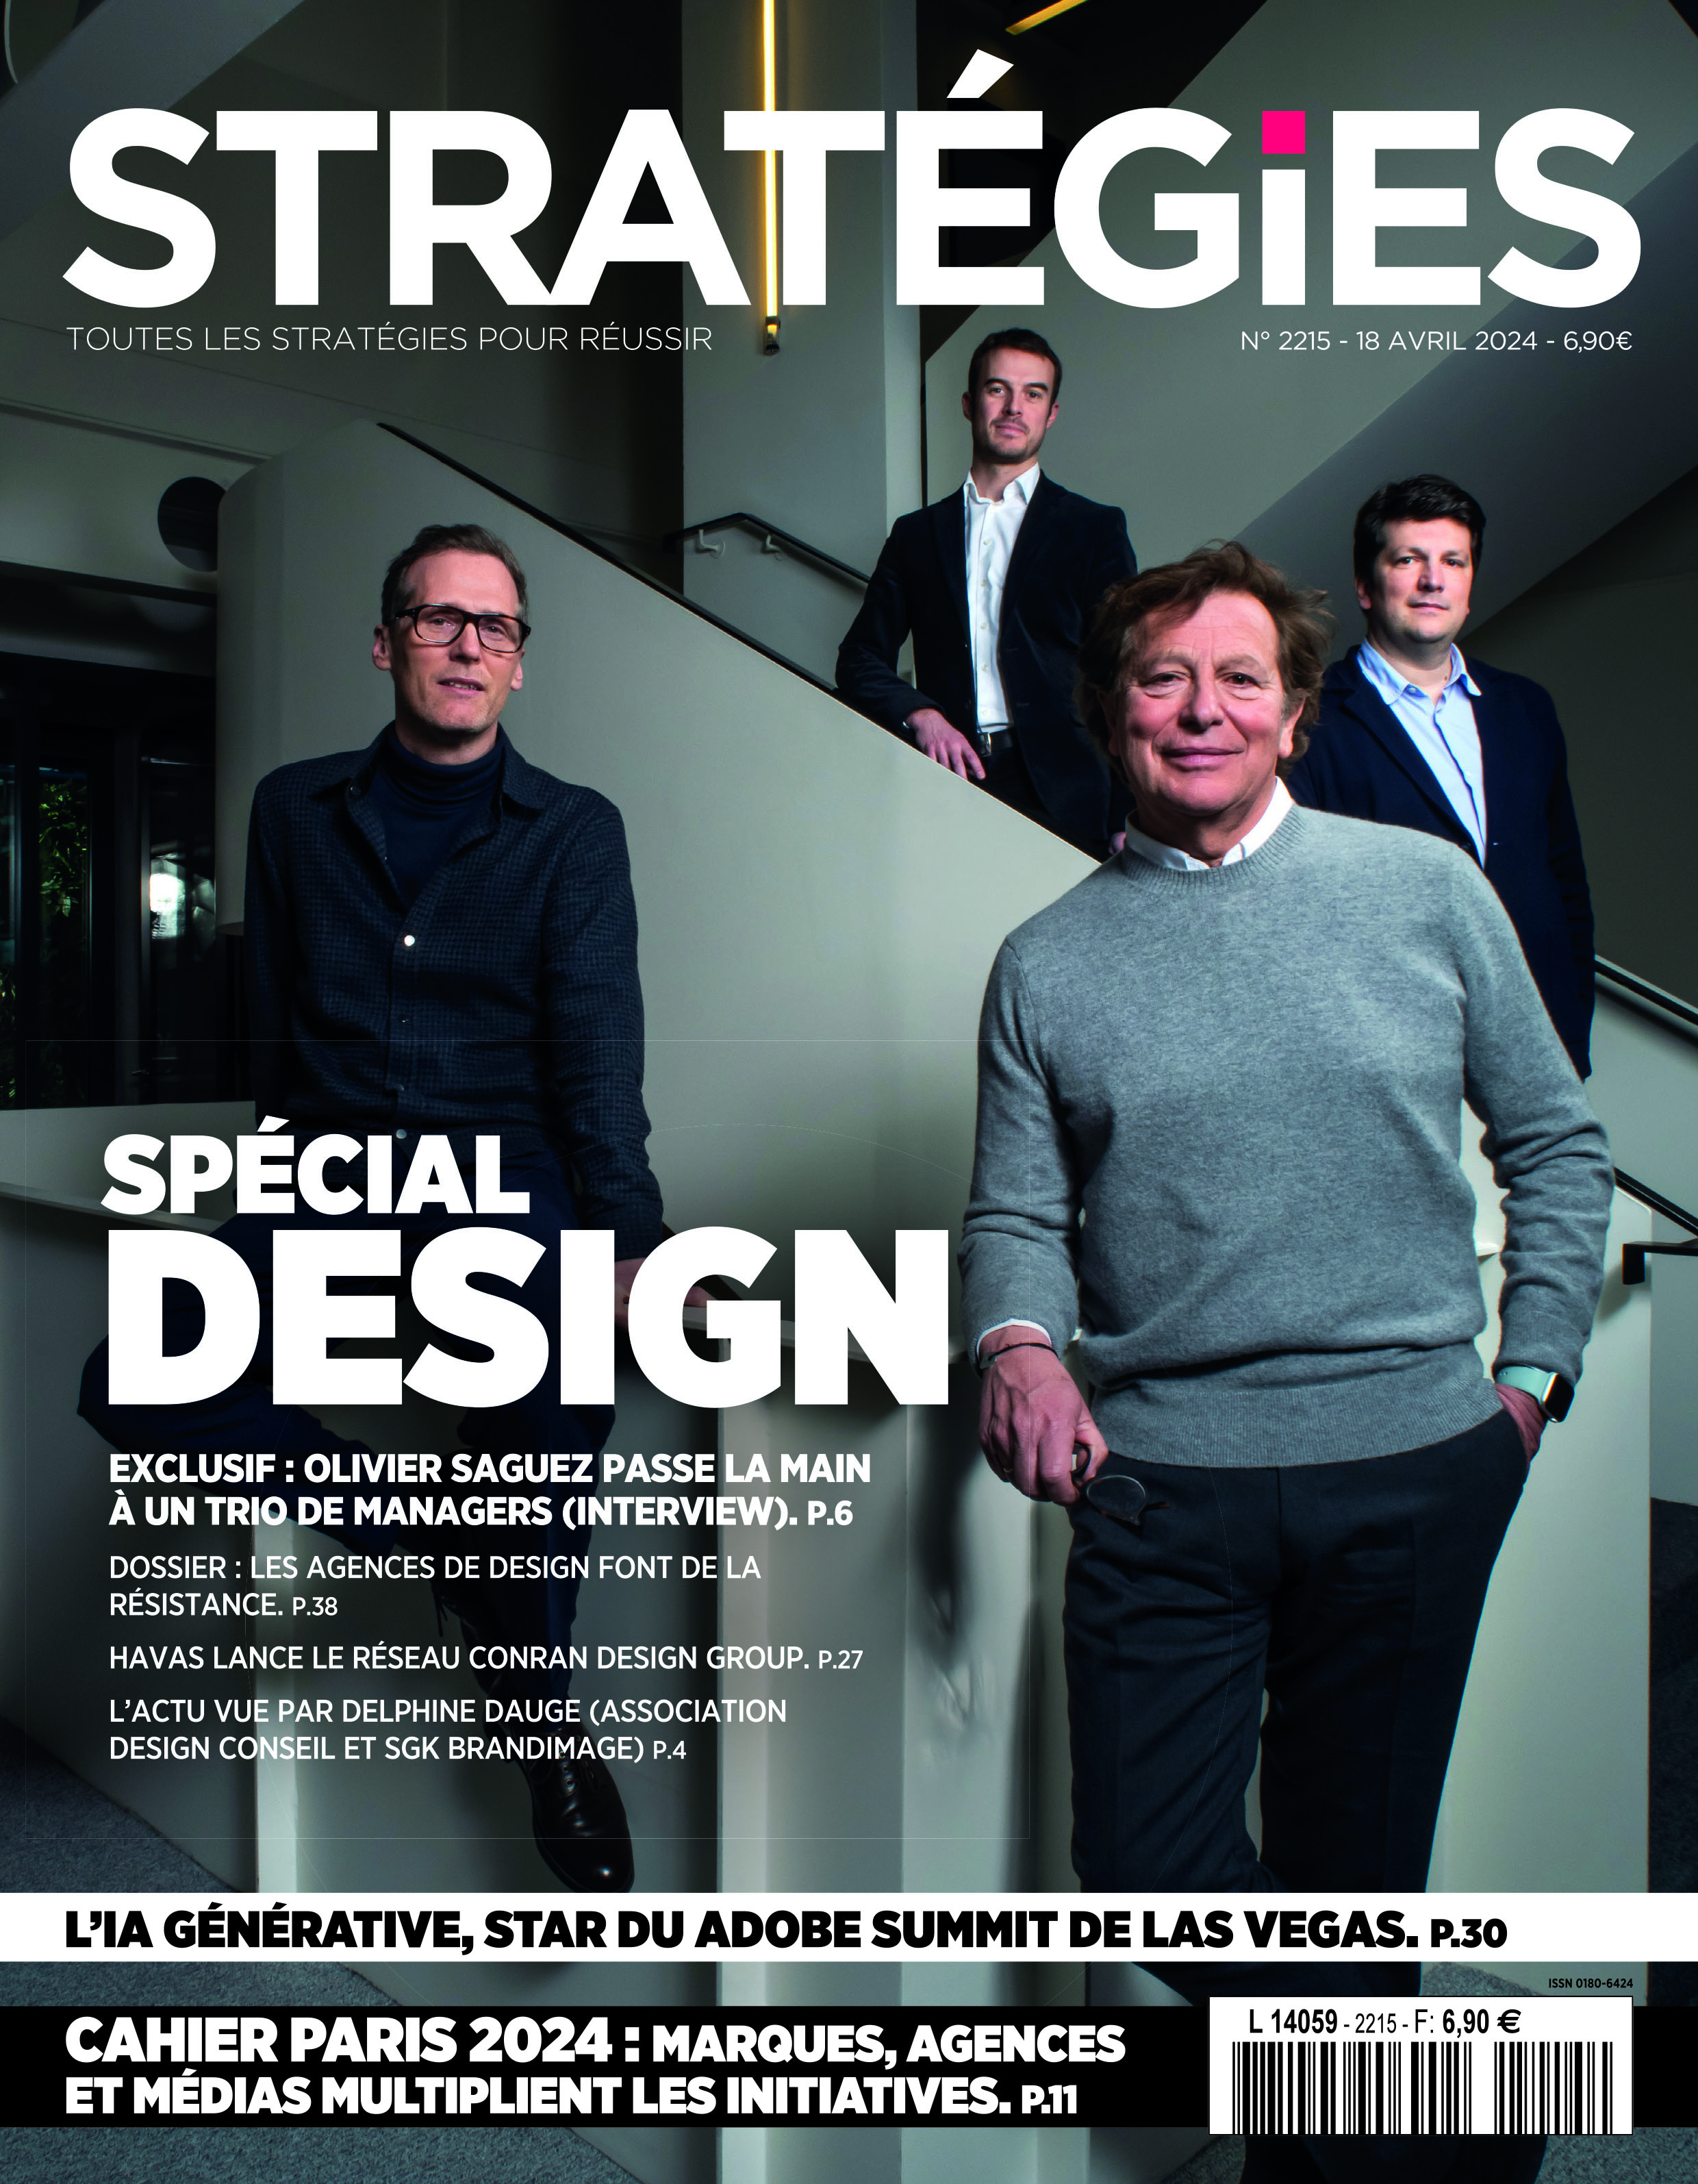 Couverture du magazine Stratégies n°2215 : "Spécial design"